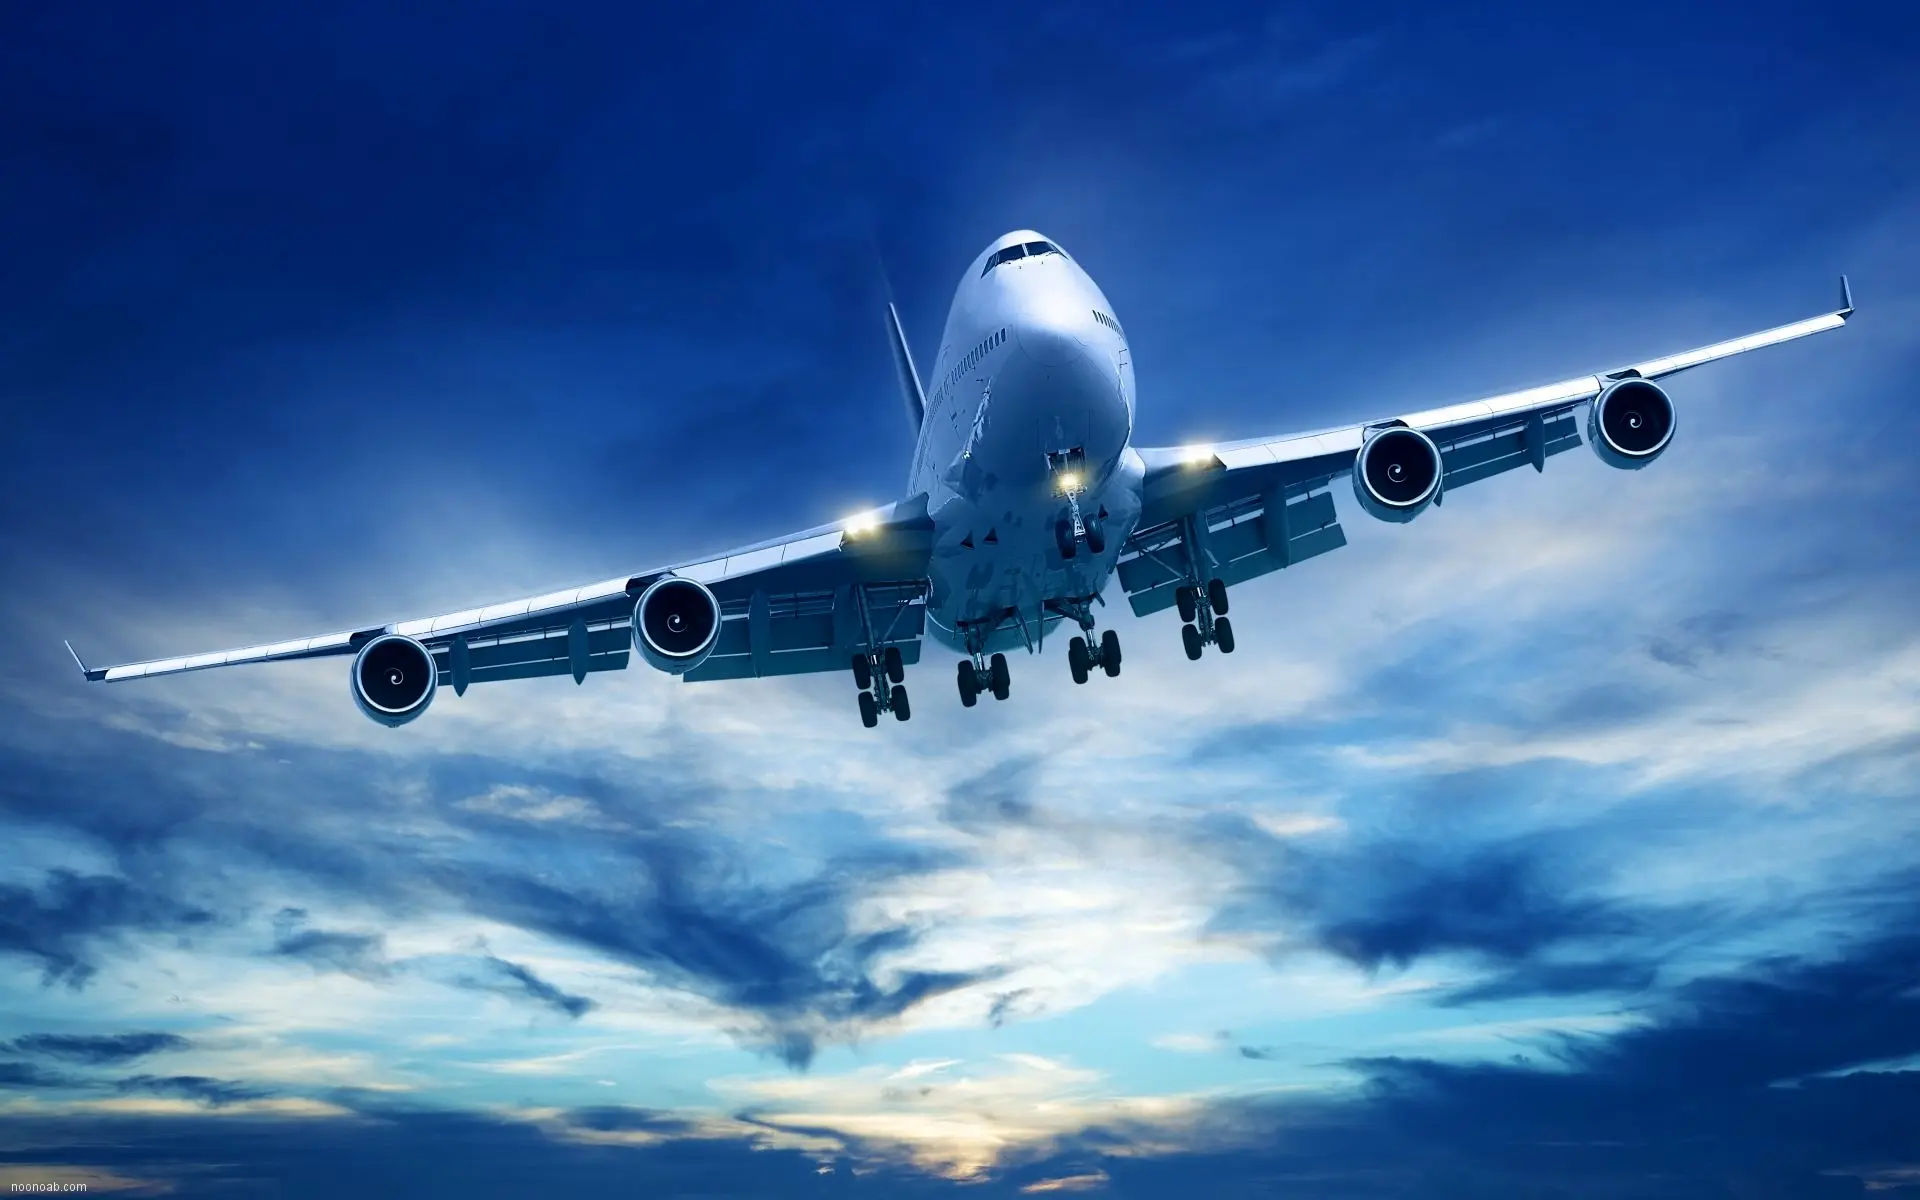 
نرخ فروش بلیت هواپیما در مسیرهای مختلف
